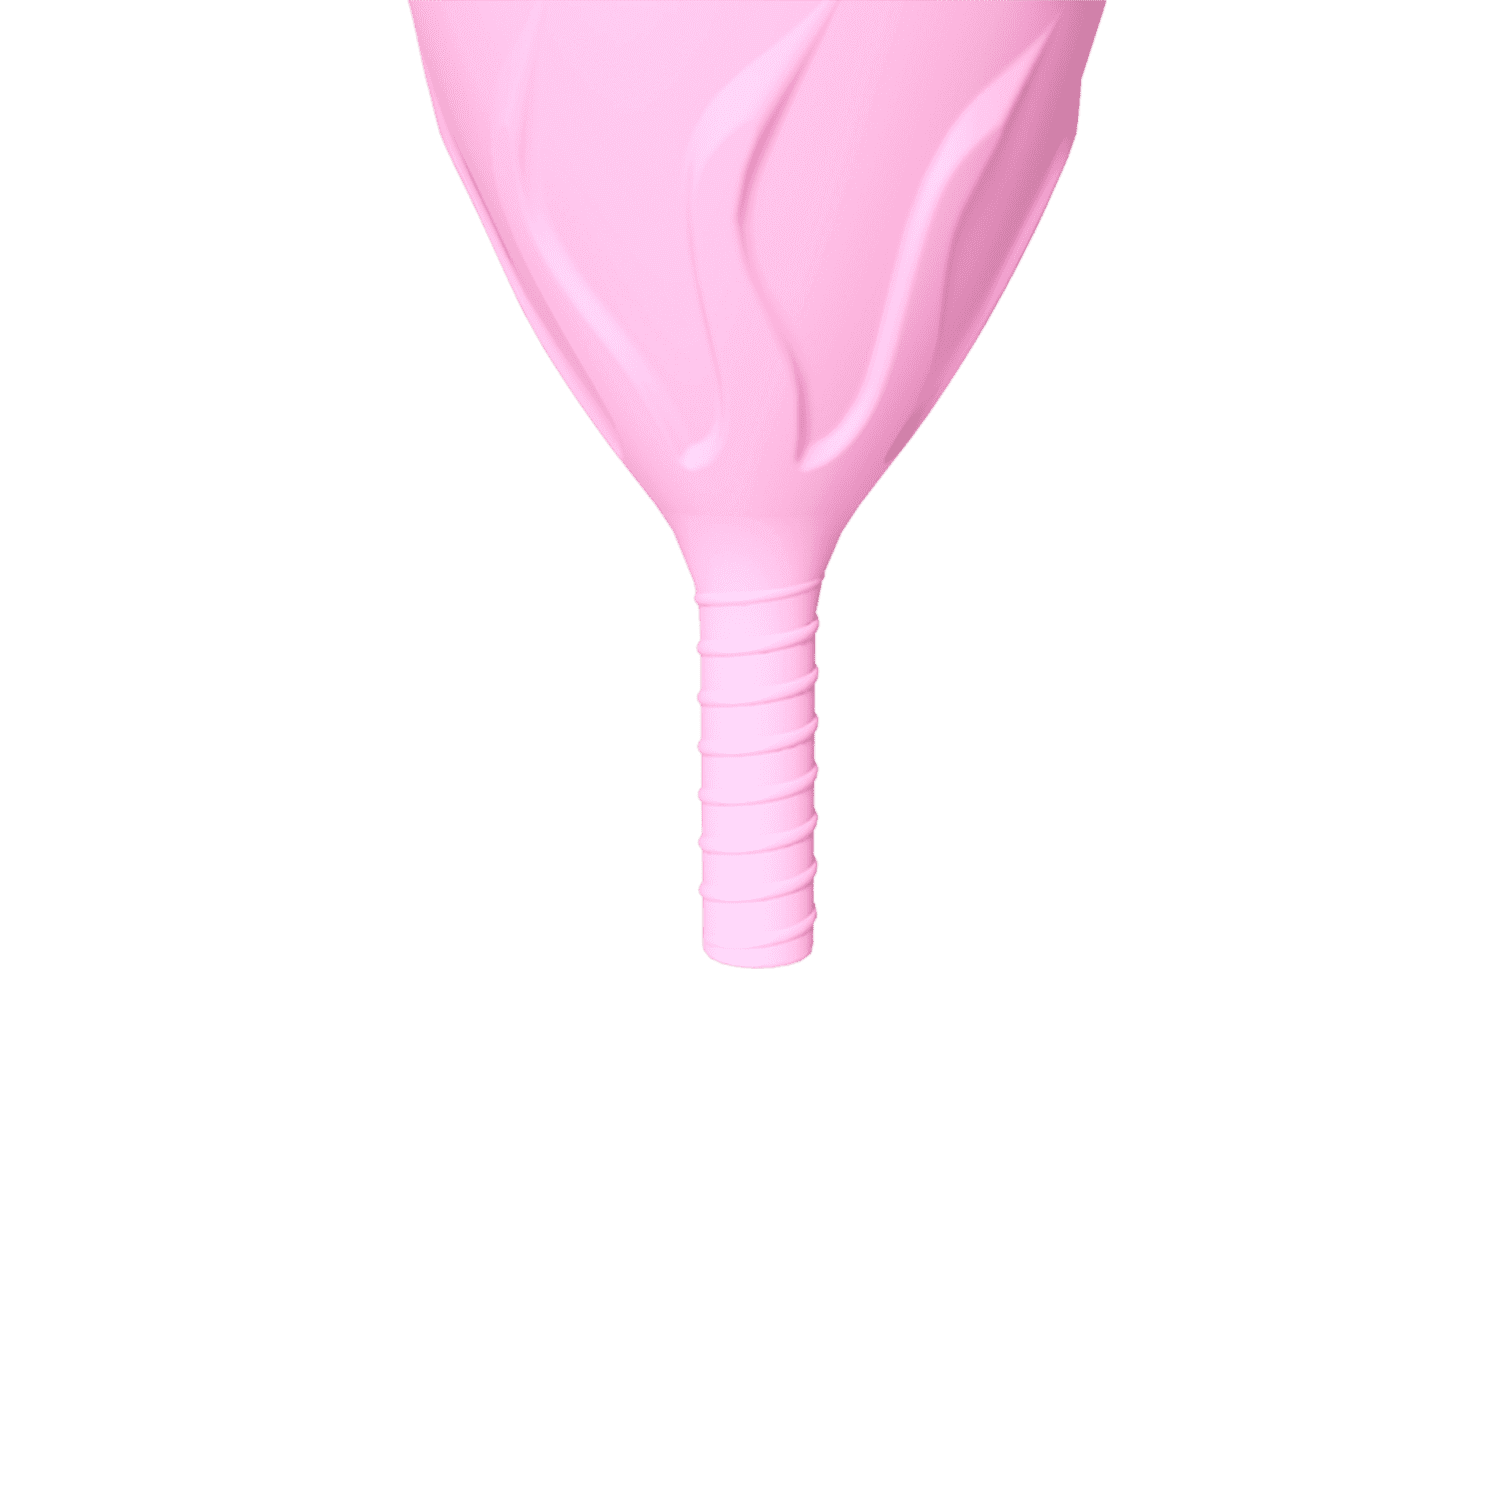 APIE TAURELĘ  
 
Medžiaga: silikonas 
Spalva: rožinė 
Matmenys: Ilgis 8.4 cm / Skersmuo 3.8 cm 
Prekės kodas: 30541